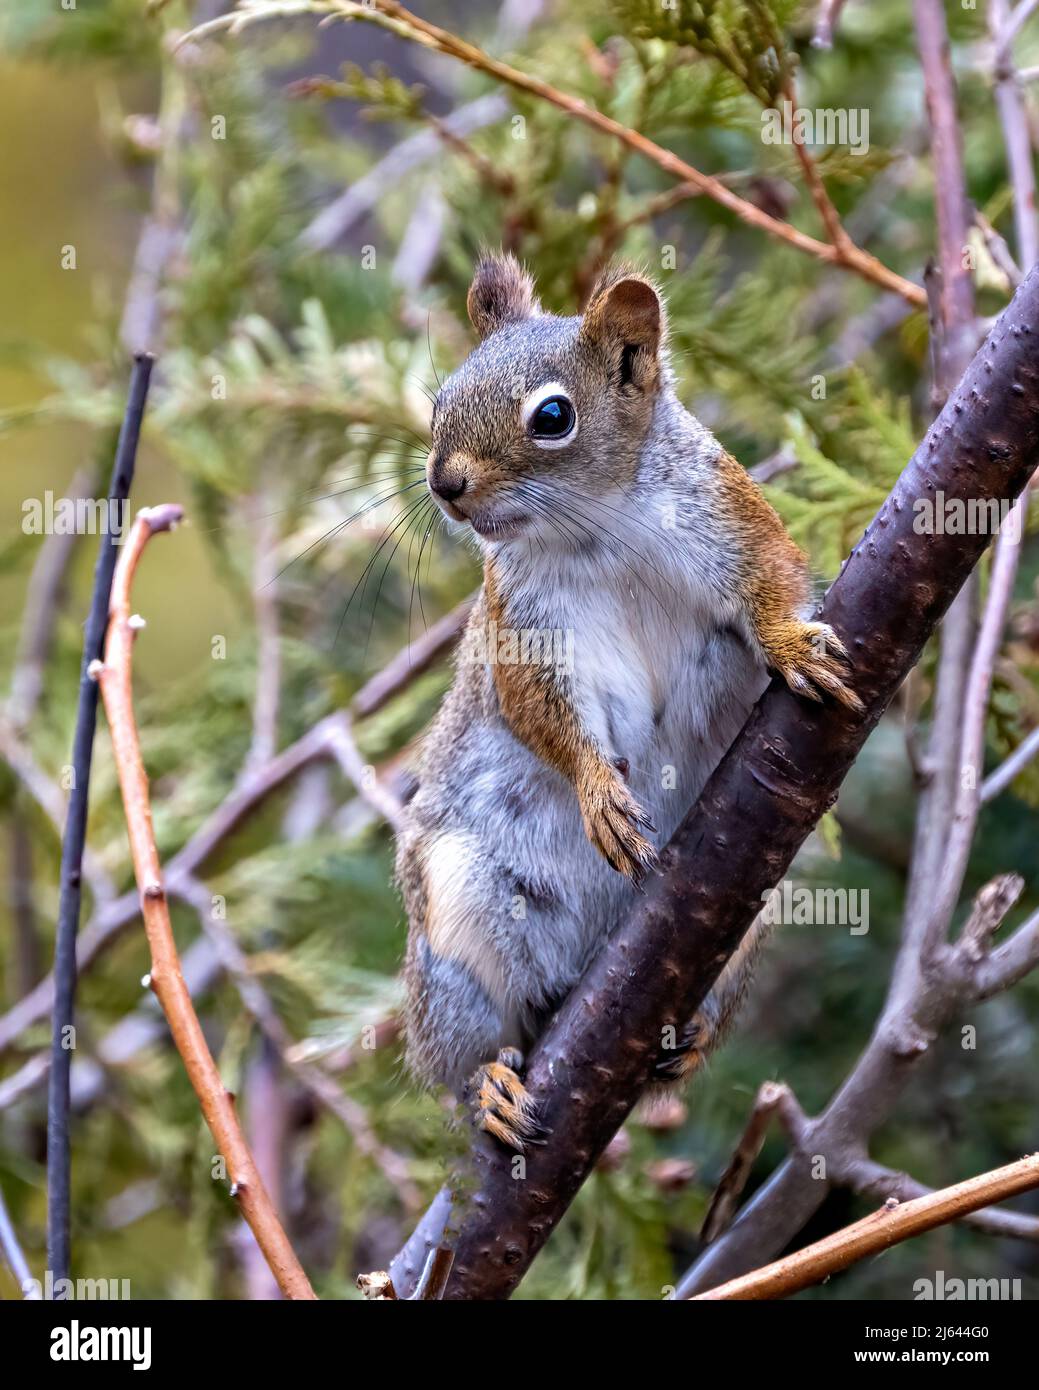 Eichhörnchen sitzt auf einem Ast mit Nadelbäumen Hintergrund in seiner Umgebung und Lebensraum Umgebung, zeigt seine braunen Fell, Pfoten, Auge. Stockfoto